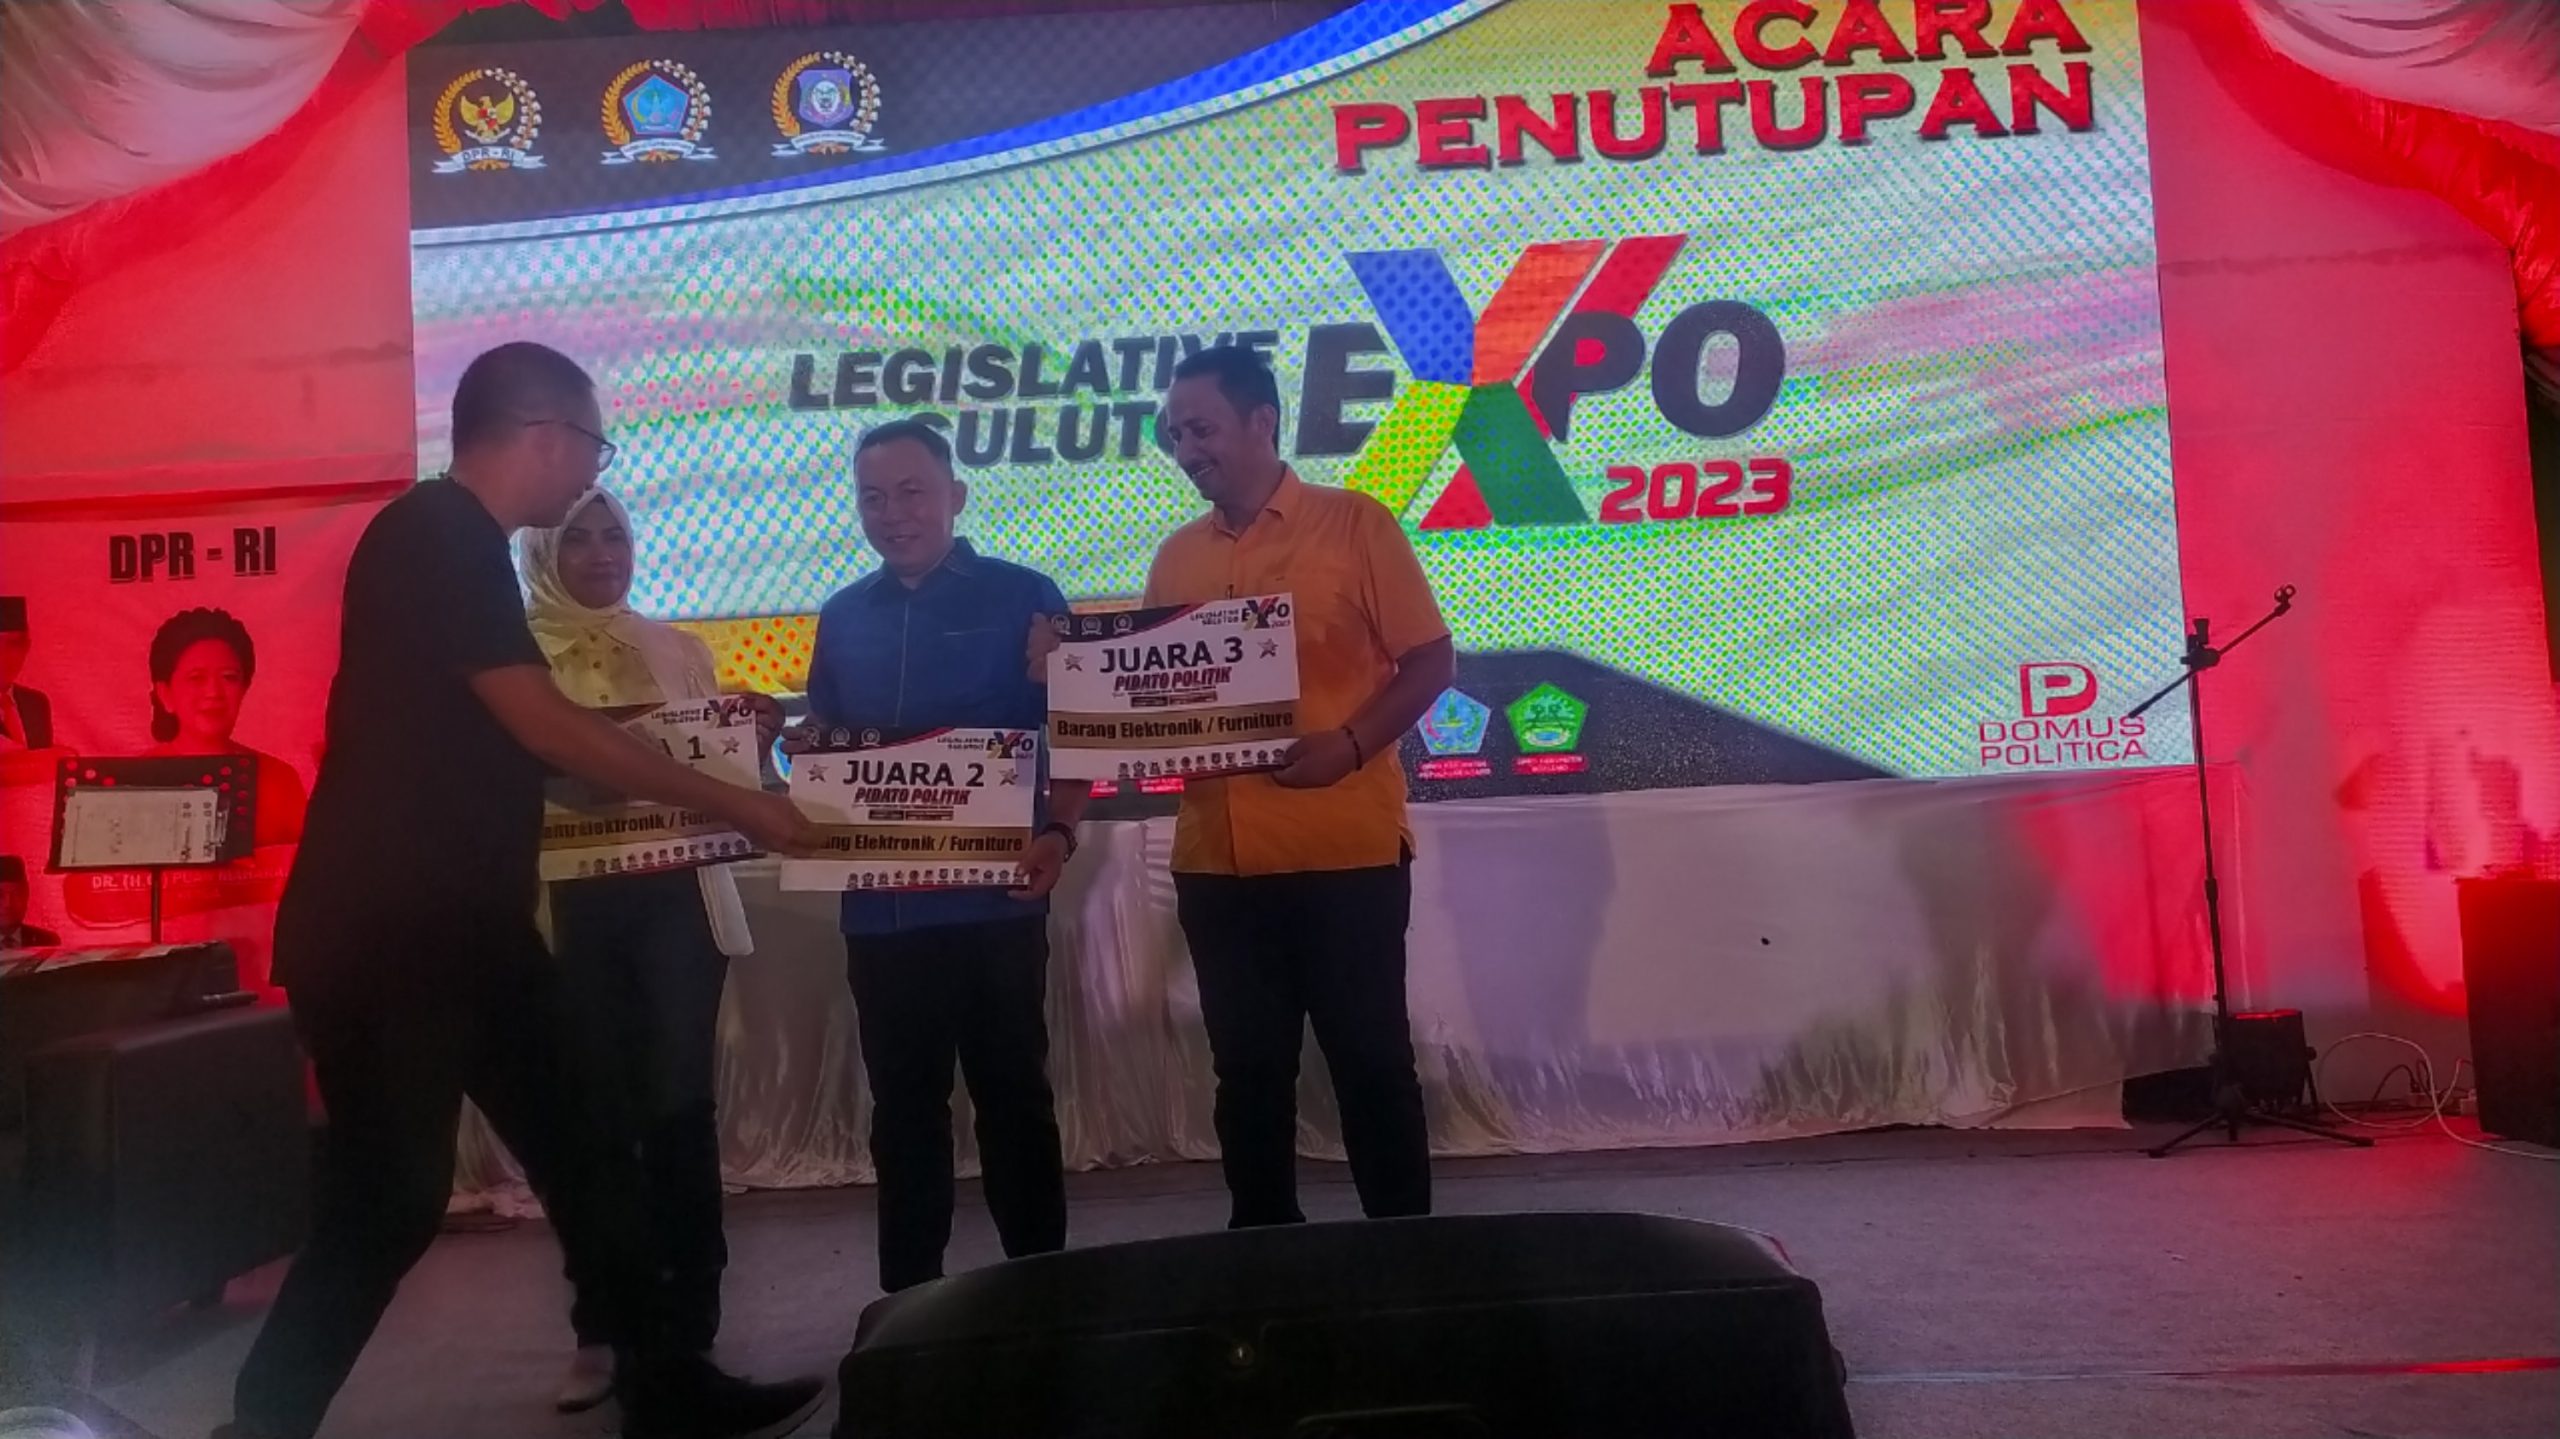 Legislatif Sulutgo Expo 